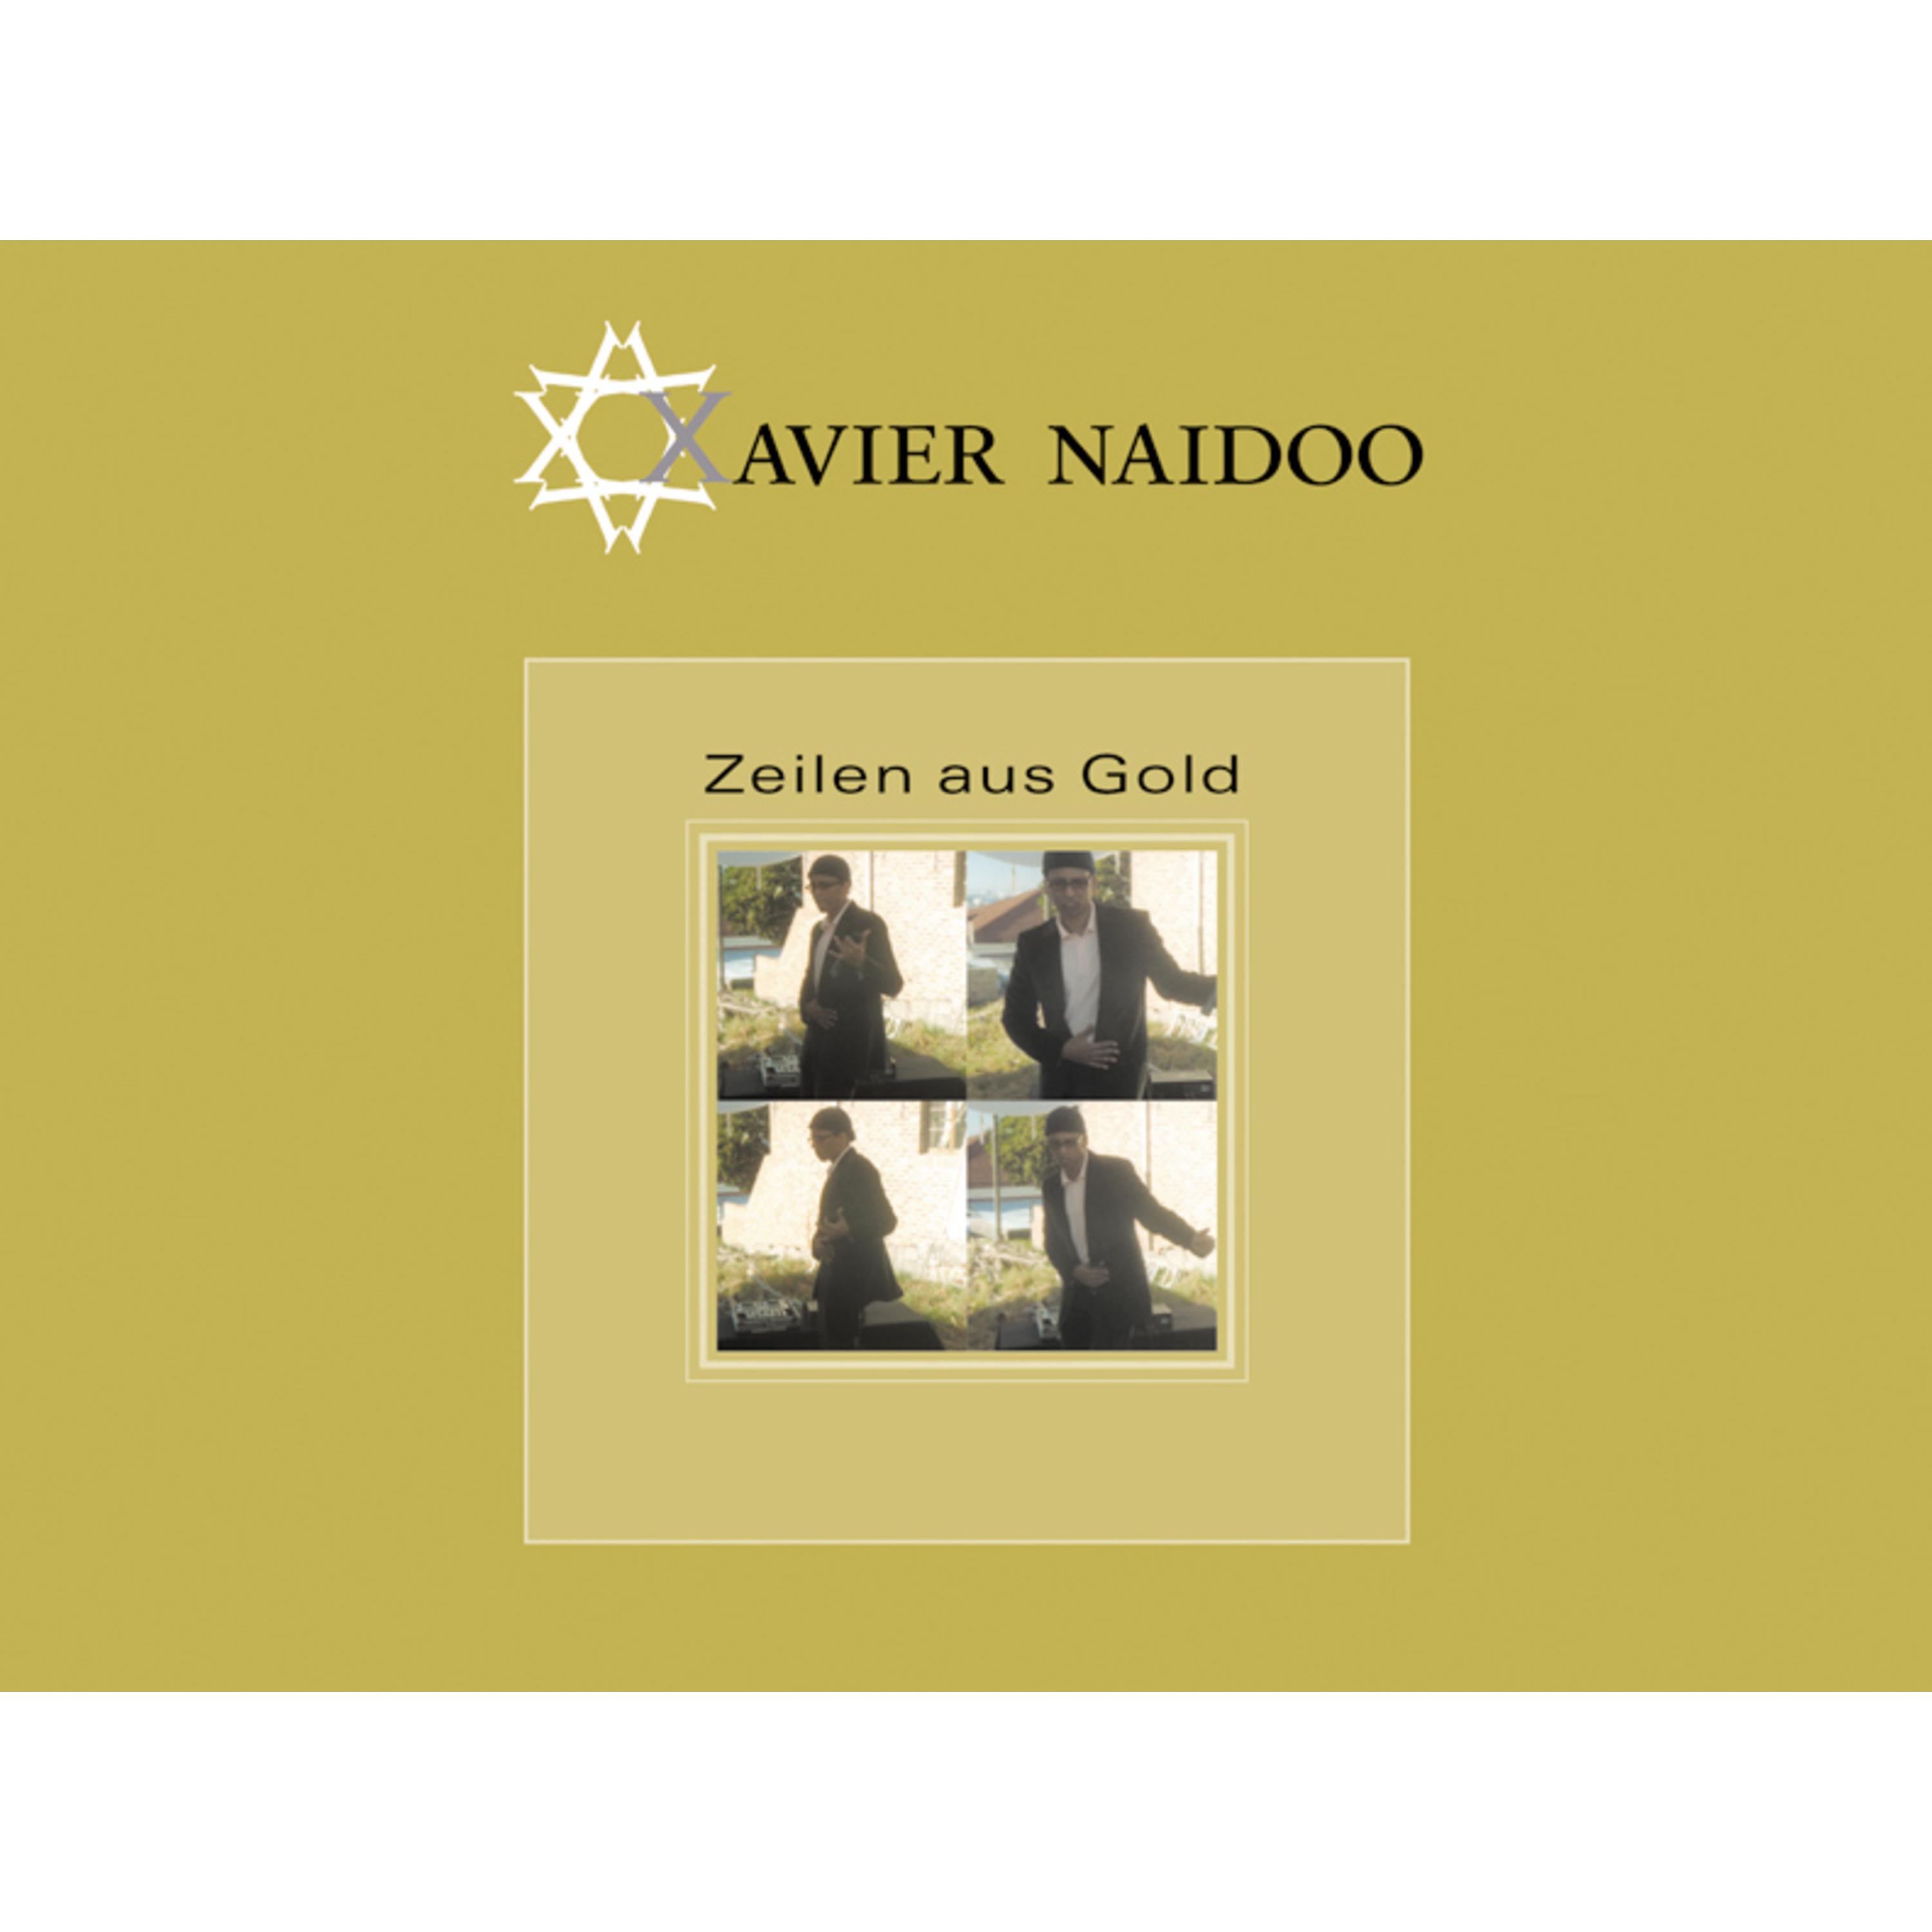 Zeilen aus Gold专辑